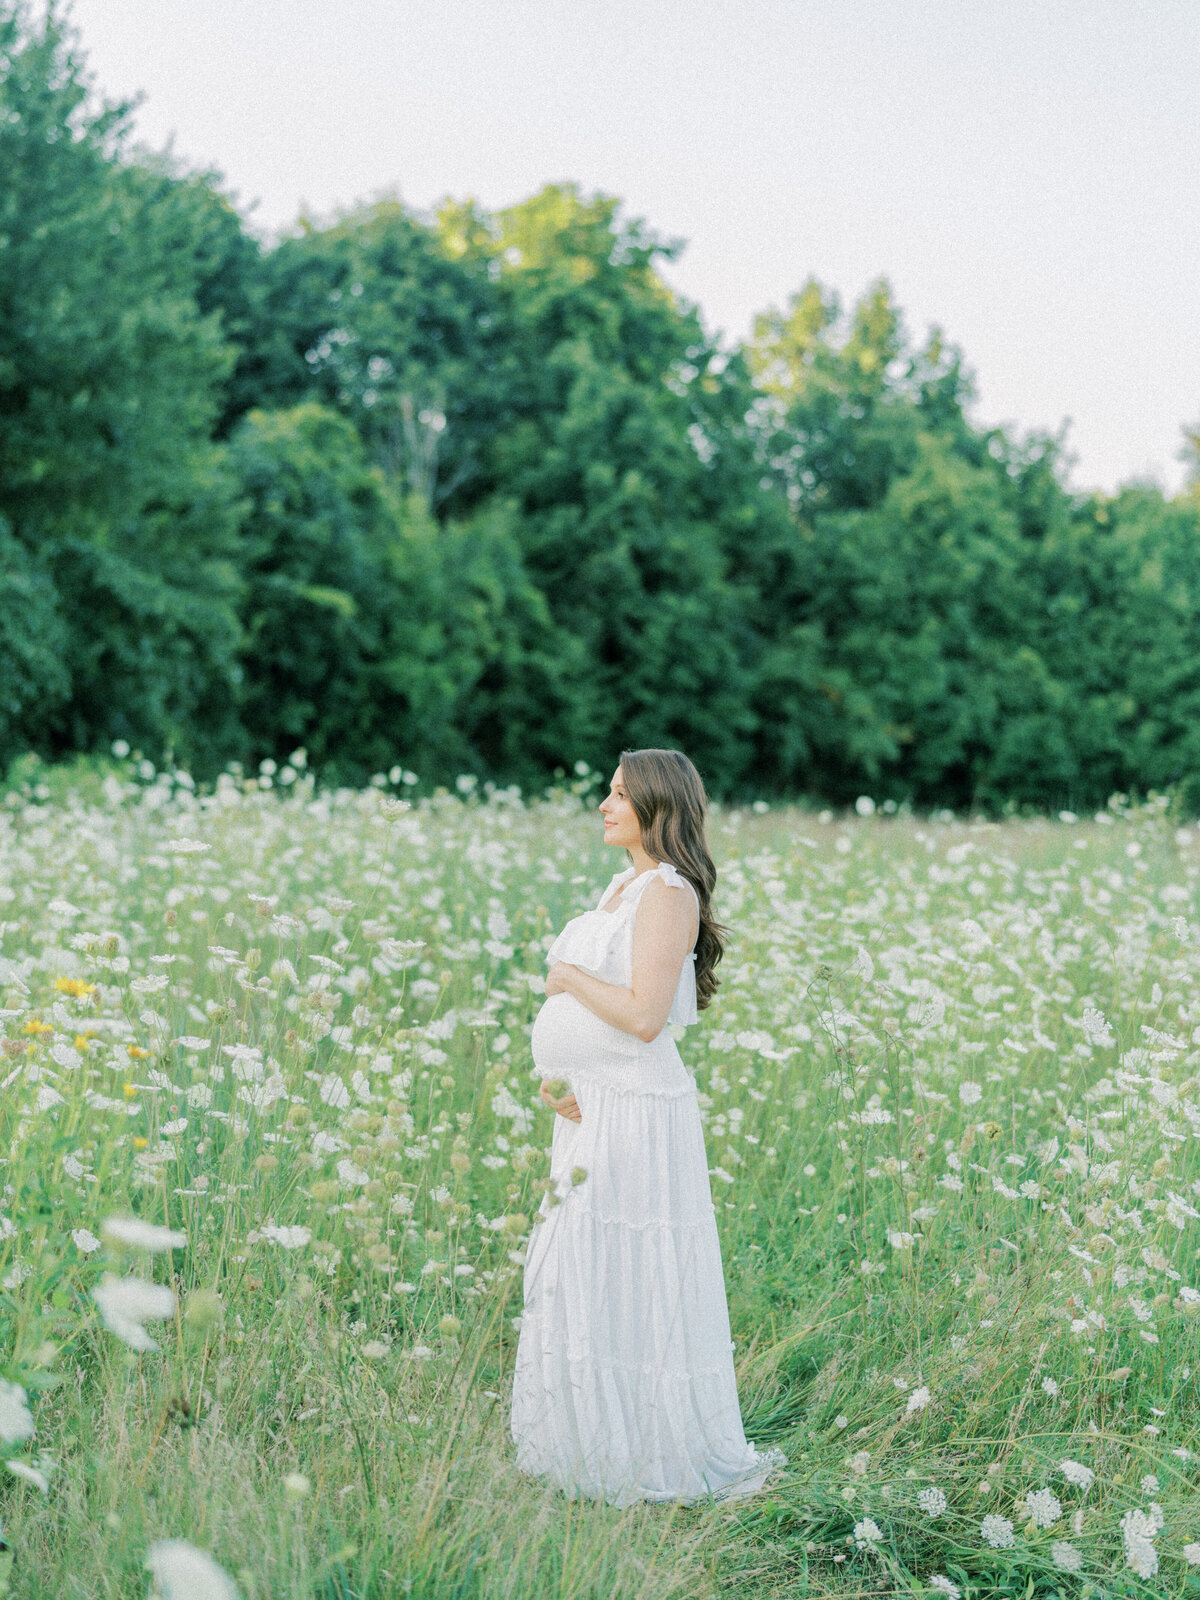 Summer Maternity Session | Amarachi Ikeji Photography 01